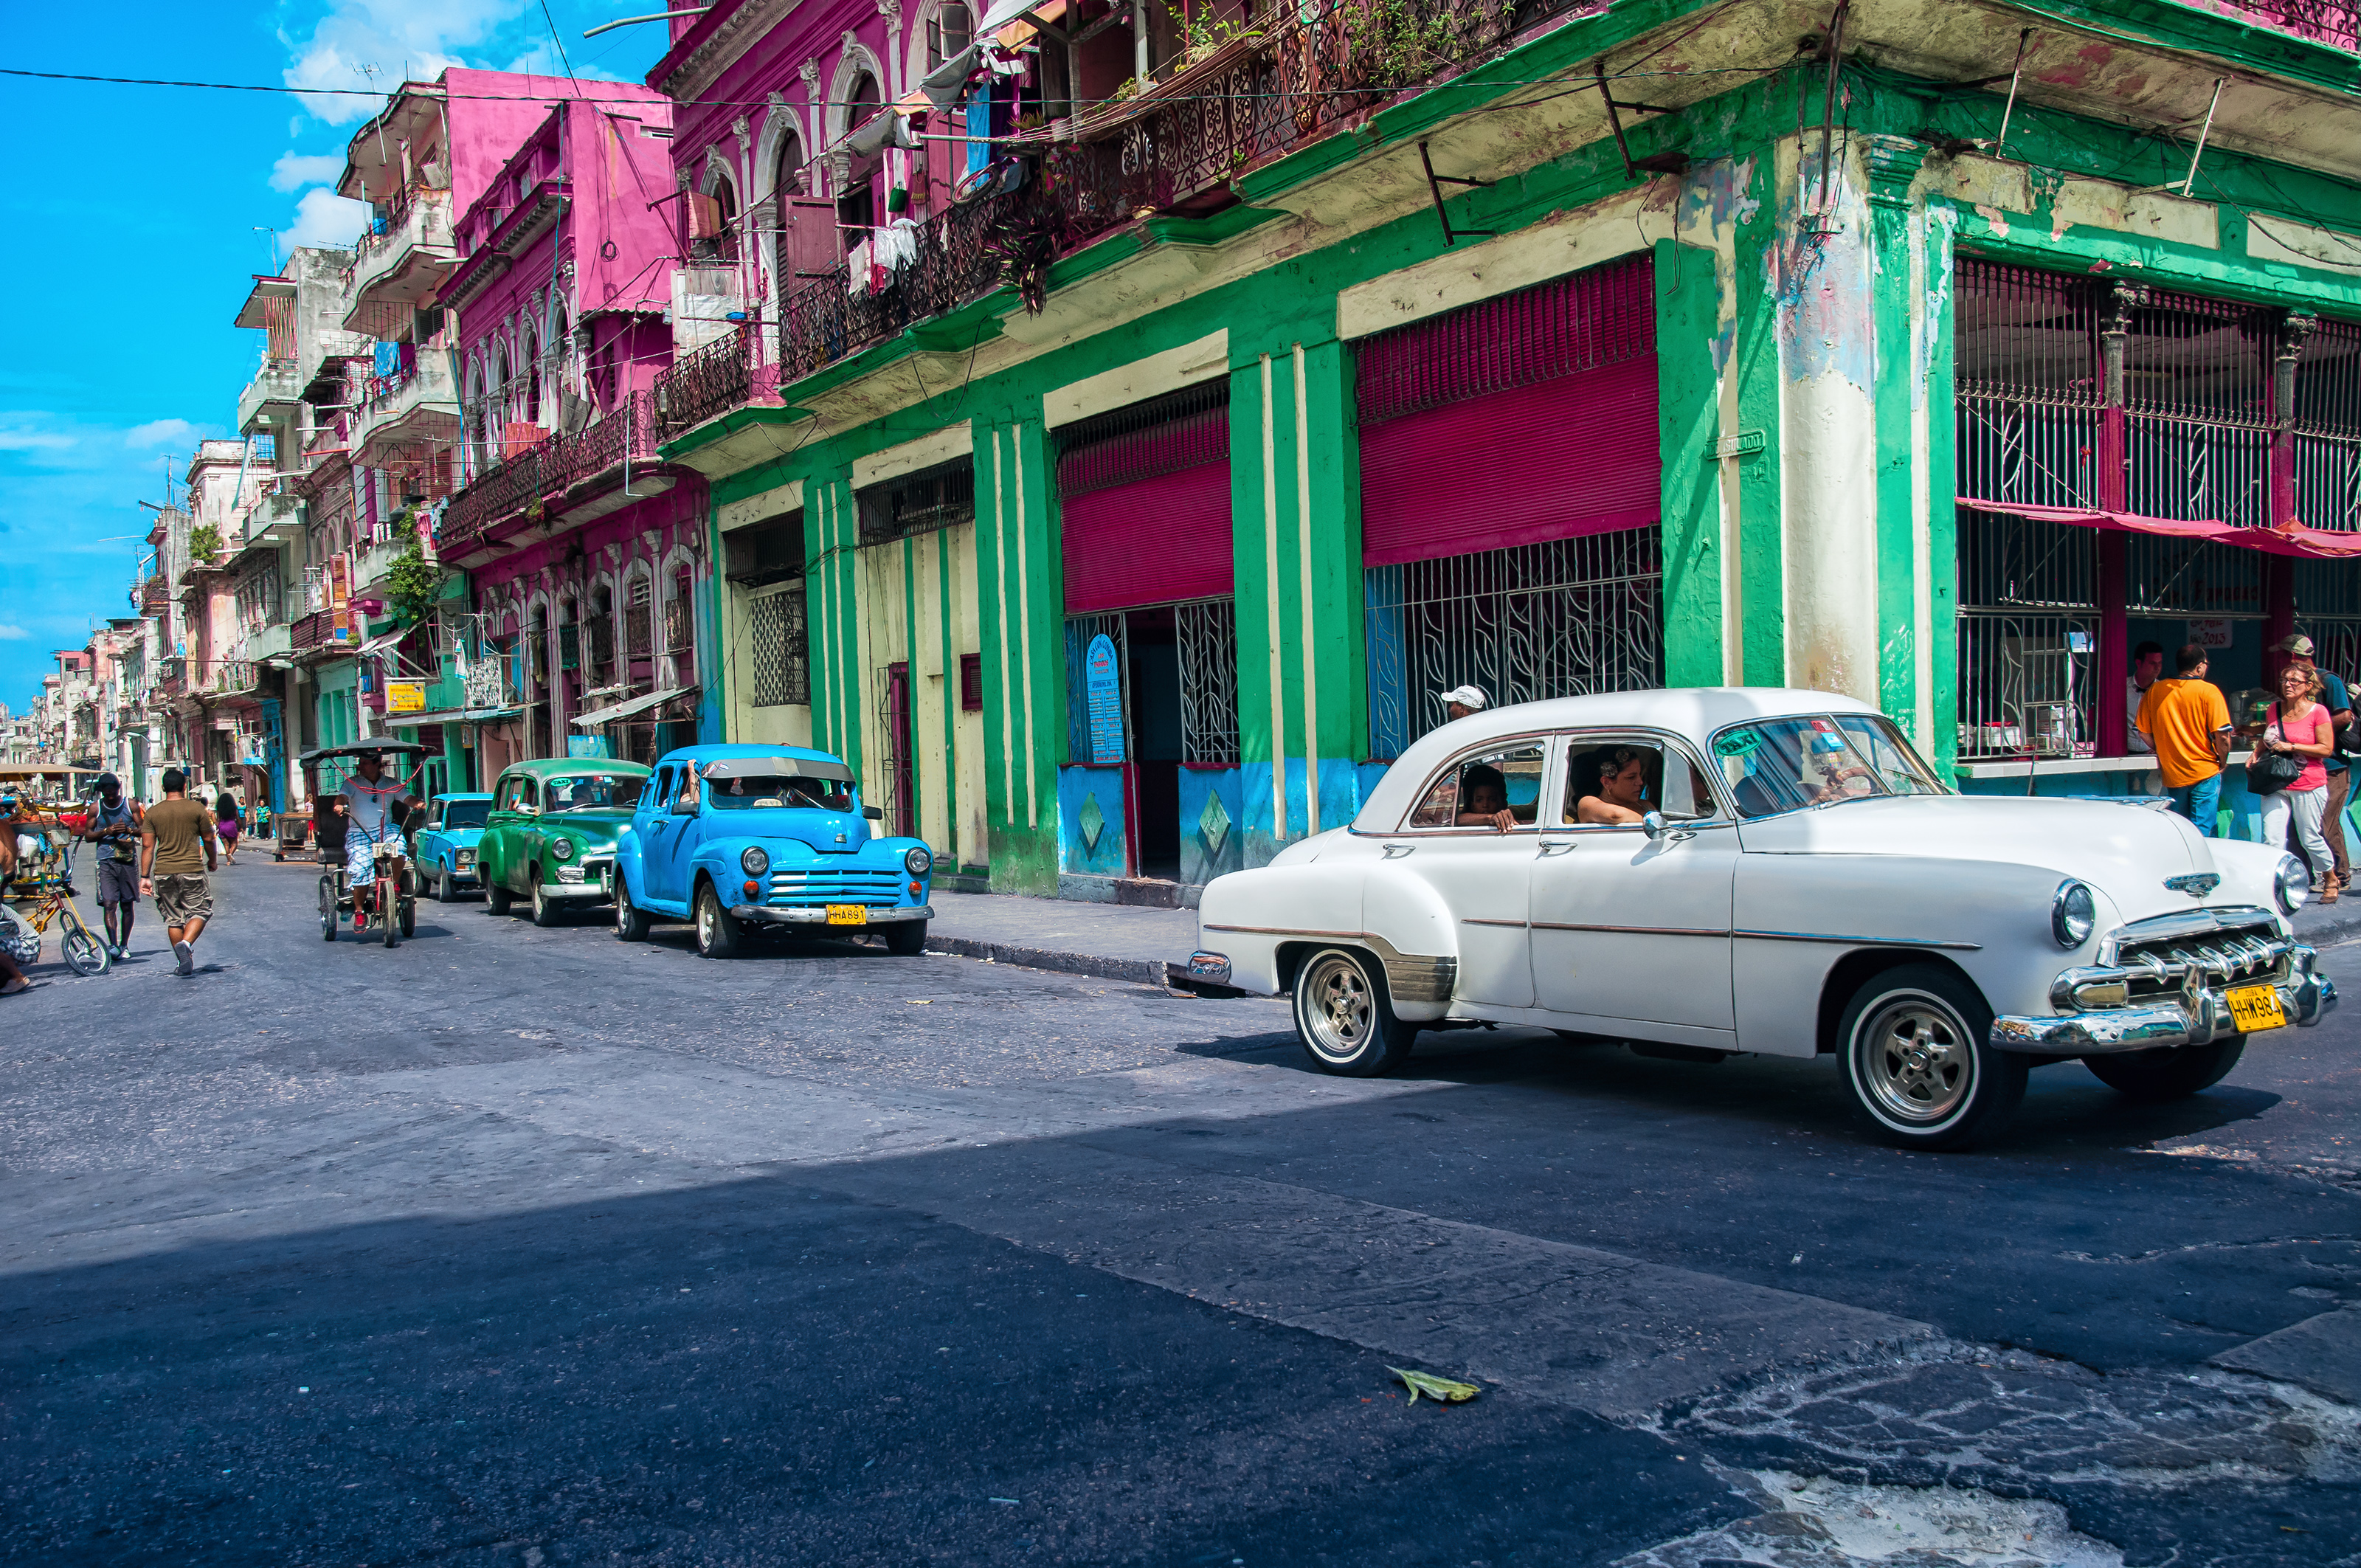 Widescreen Havana Image For